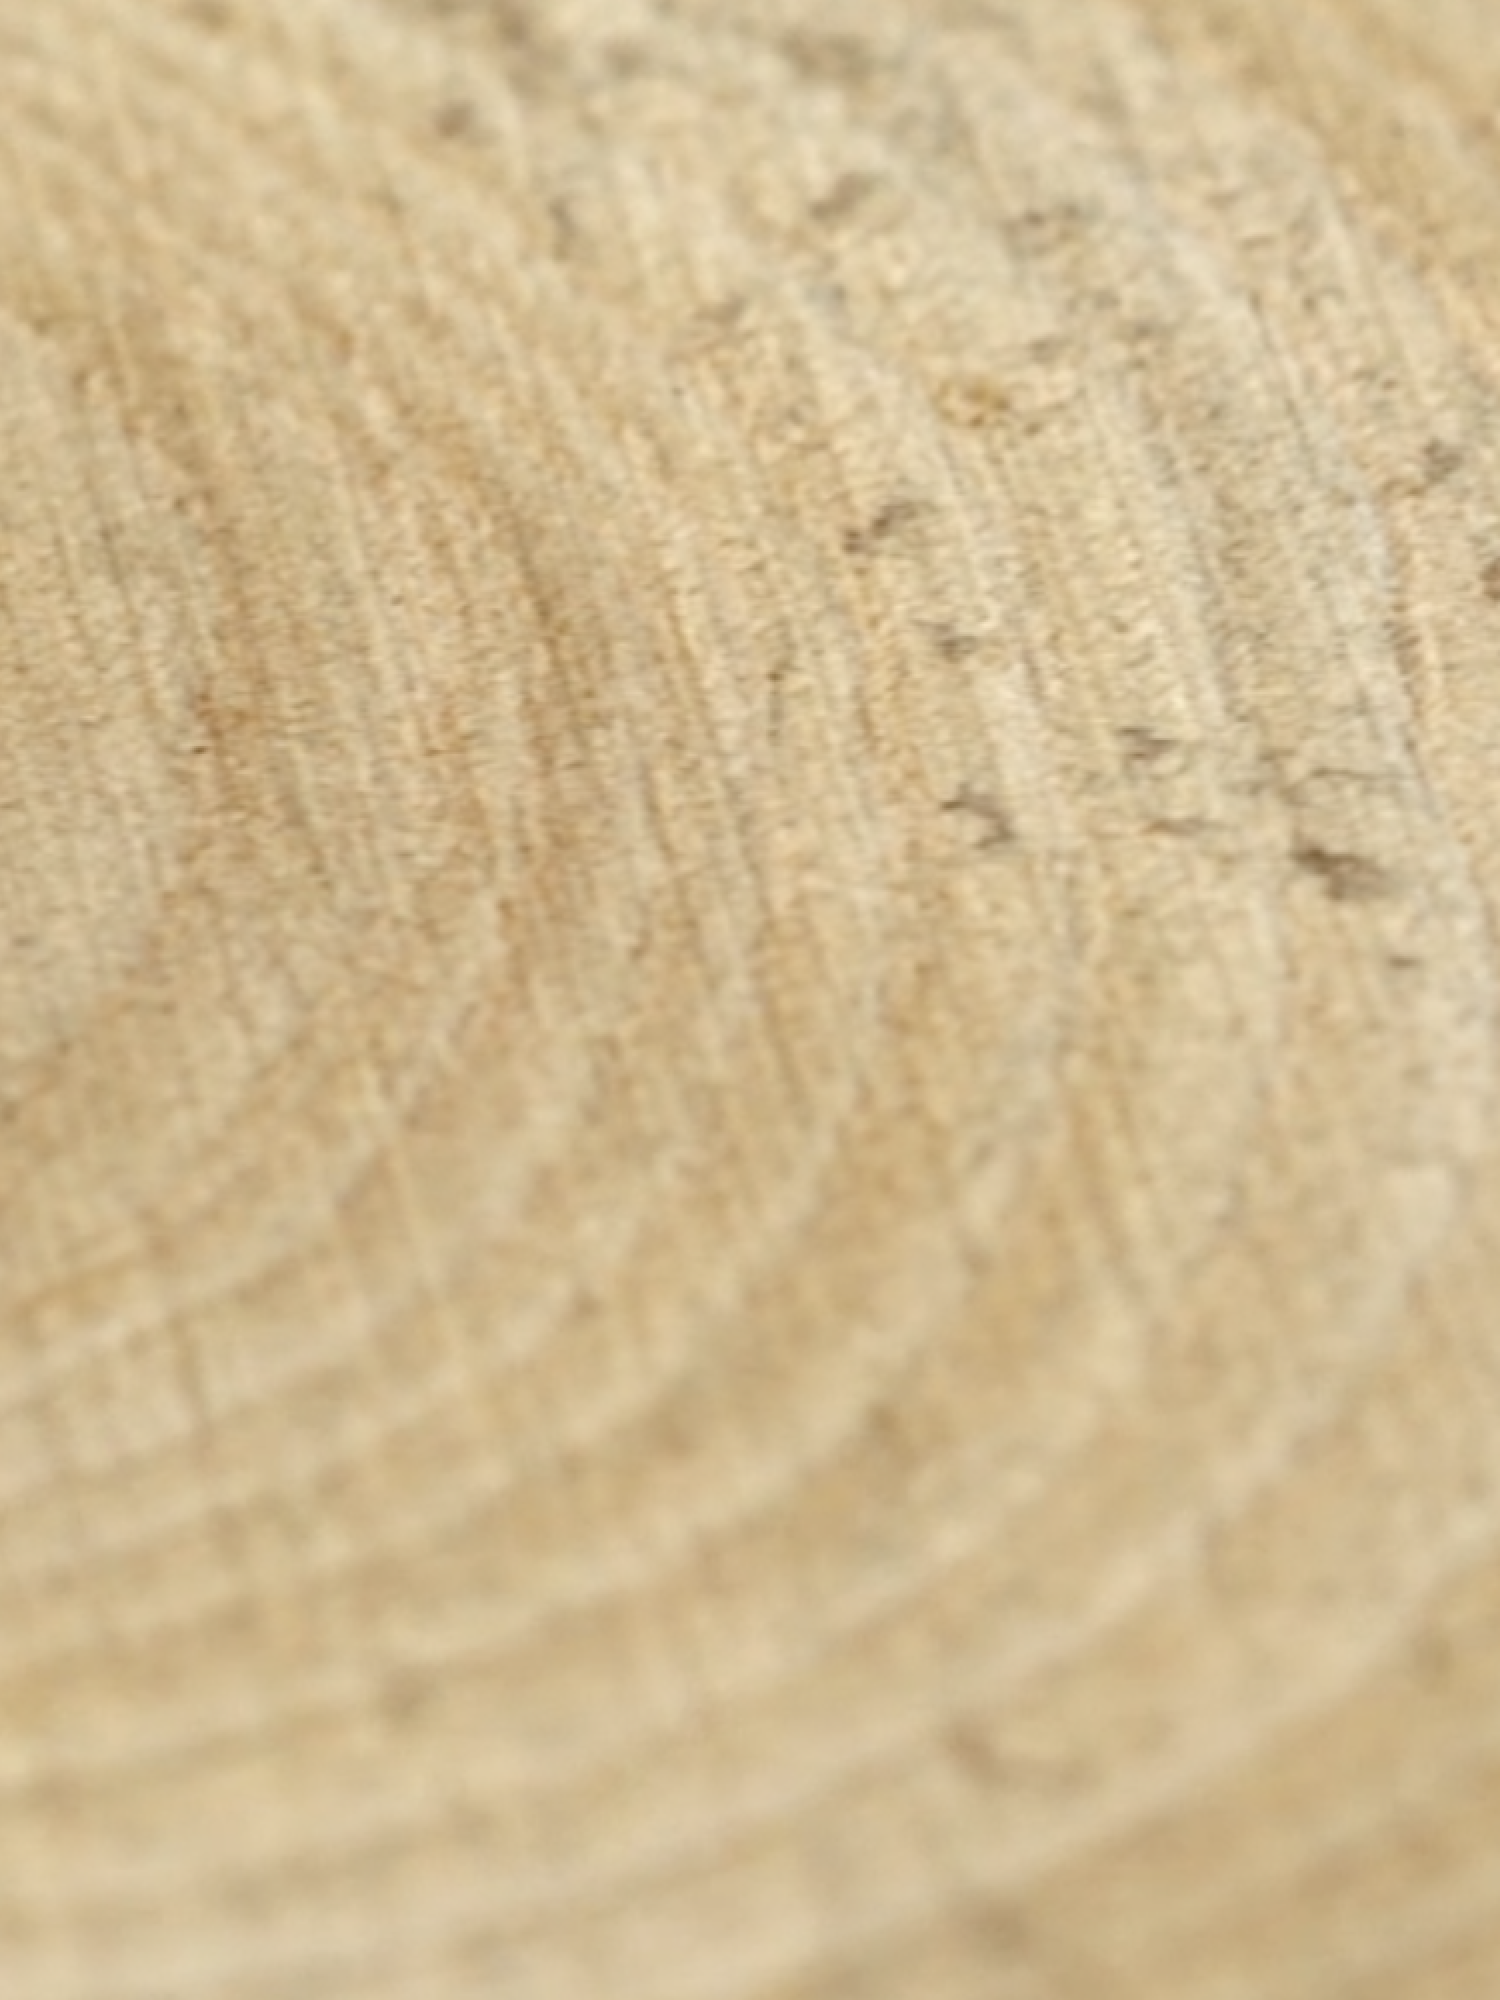 Diptyque Eau Papier Ingredients - Blonde woods